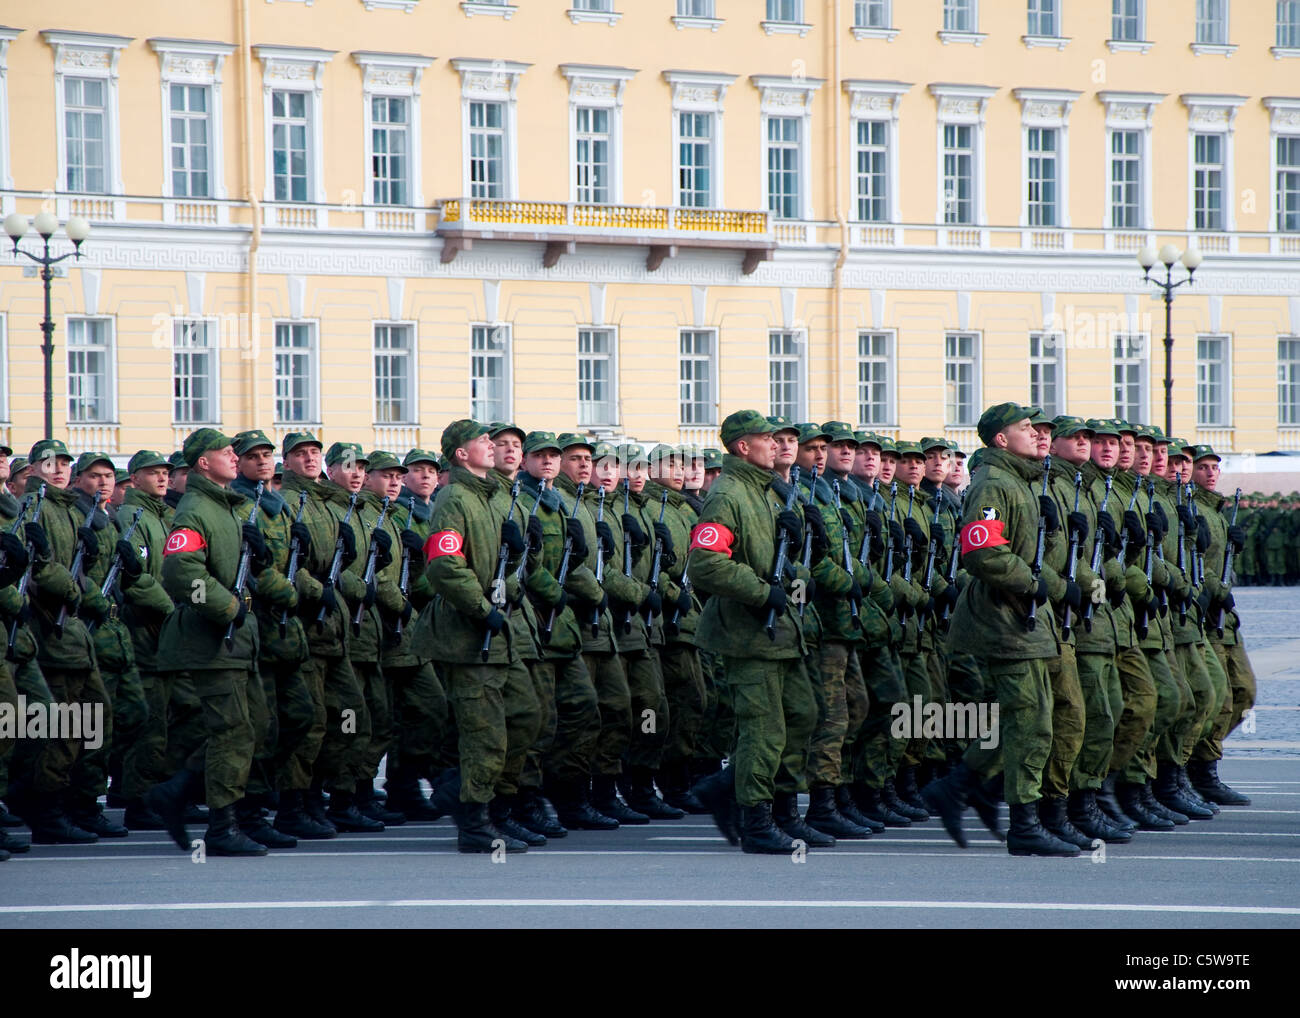 Soldaten marschieren in Schlossplatz, Sankt Petersburg, Russland Stockfoto